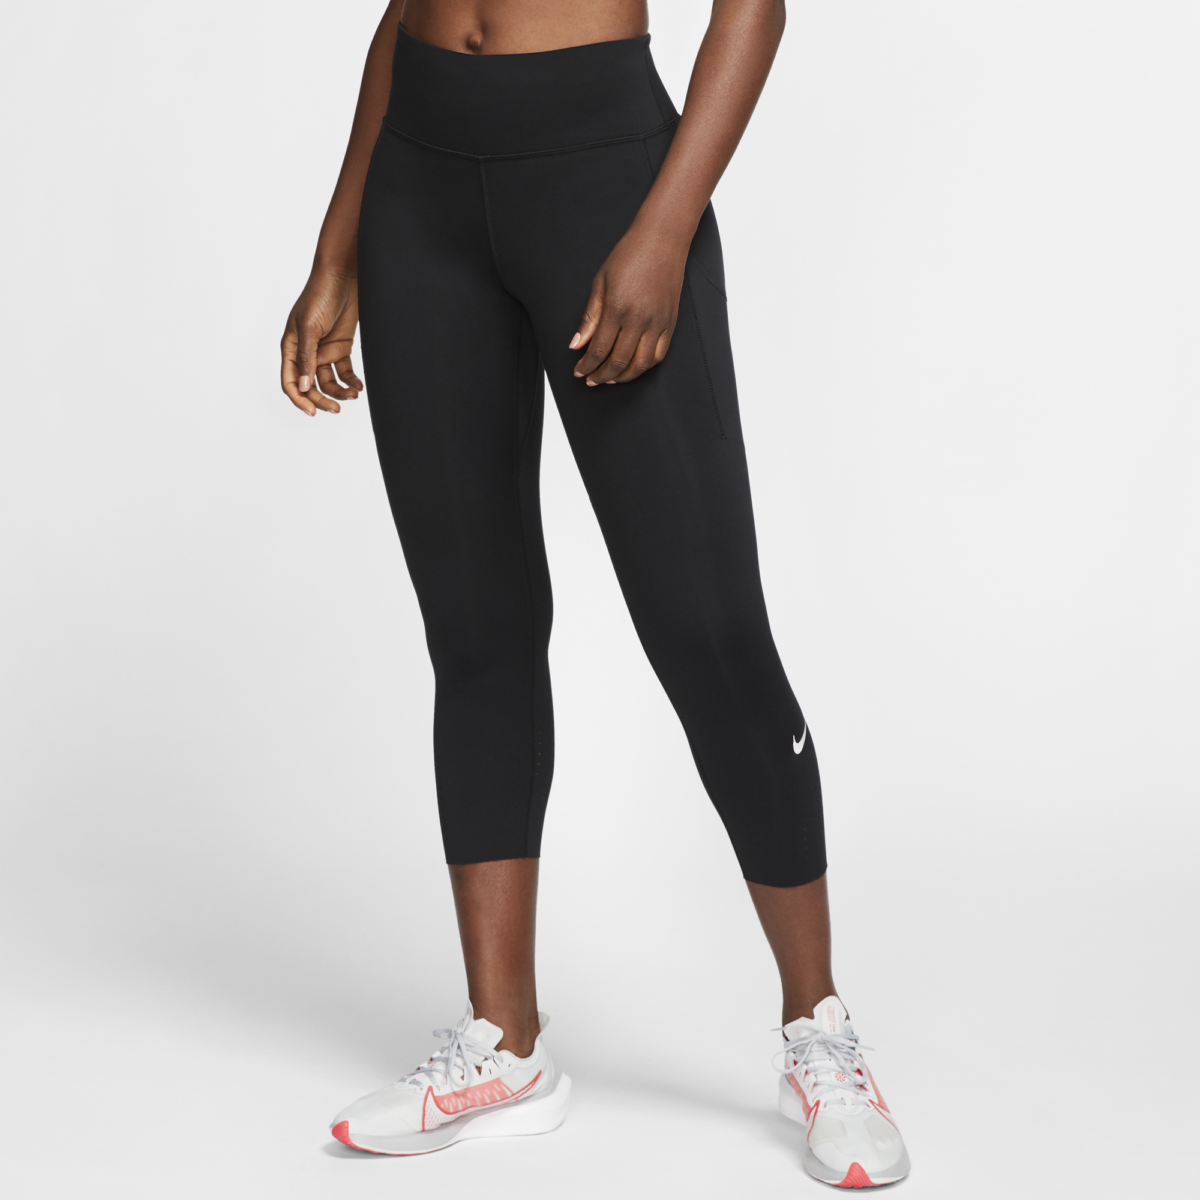 Legging woman Nike Epic Luxe